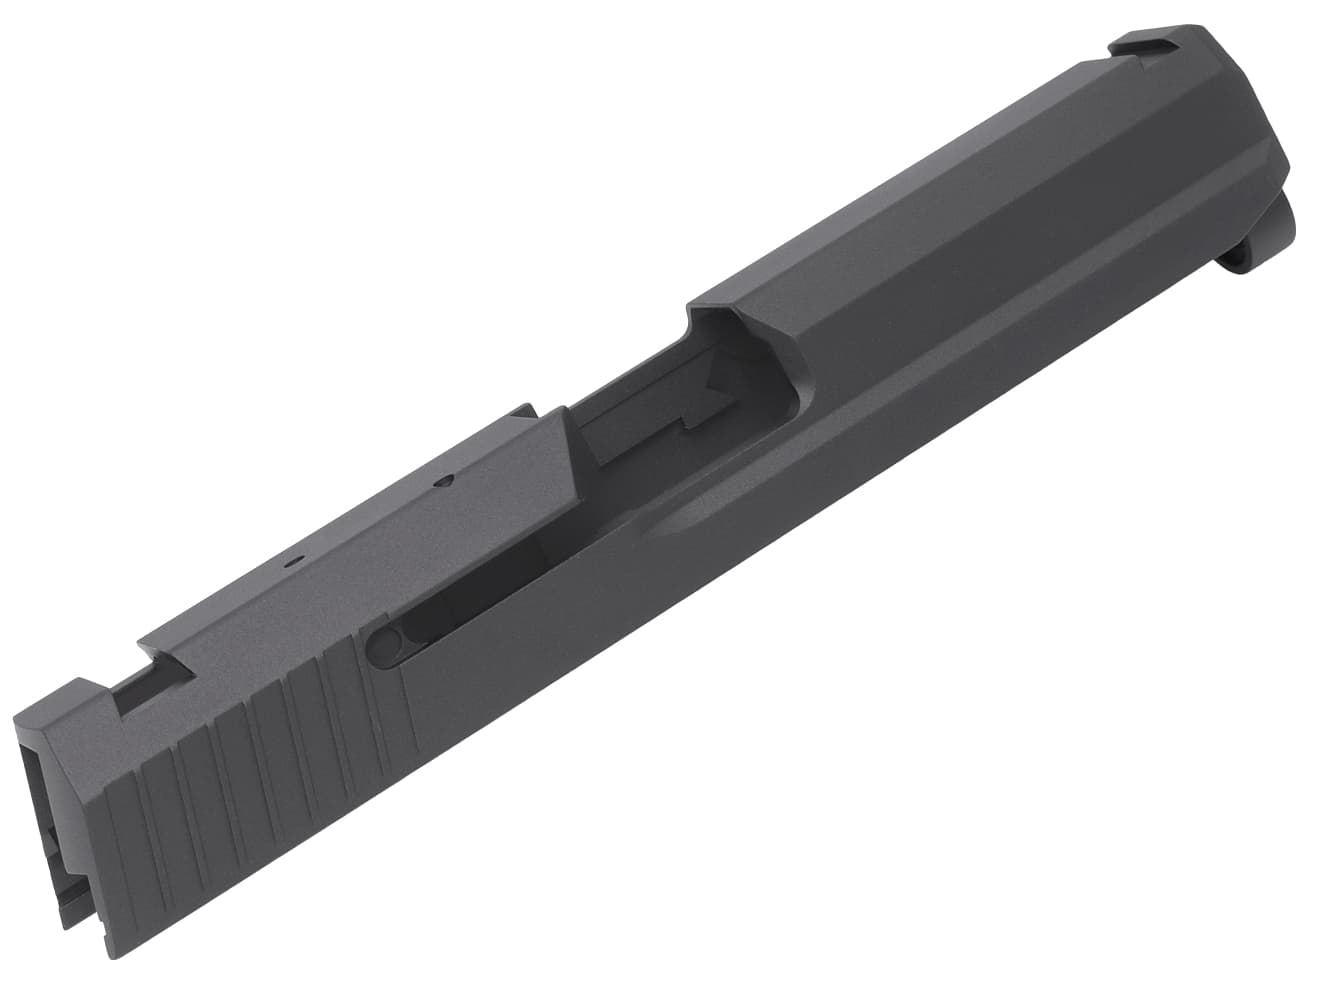 GUARDER USP 9mmマーキング アルミCNC スライド for マルイ GBB USP [カラー：ブラック / シルバー]